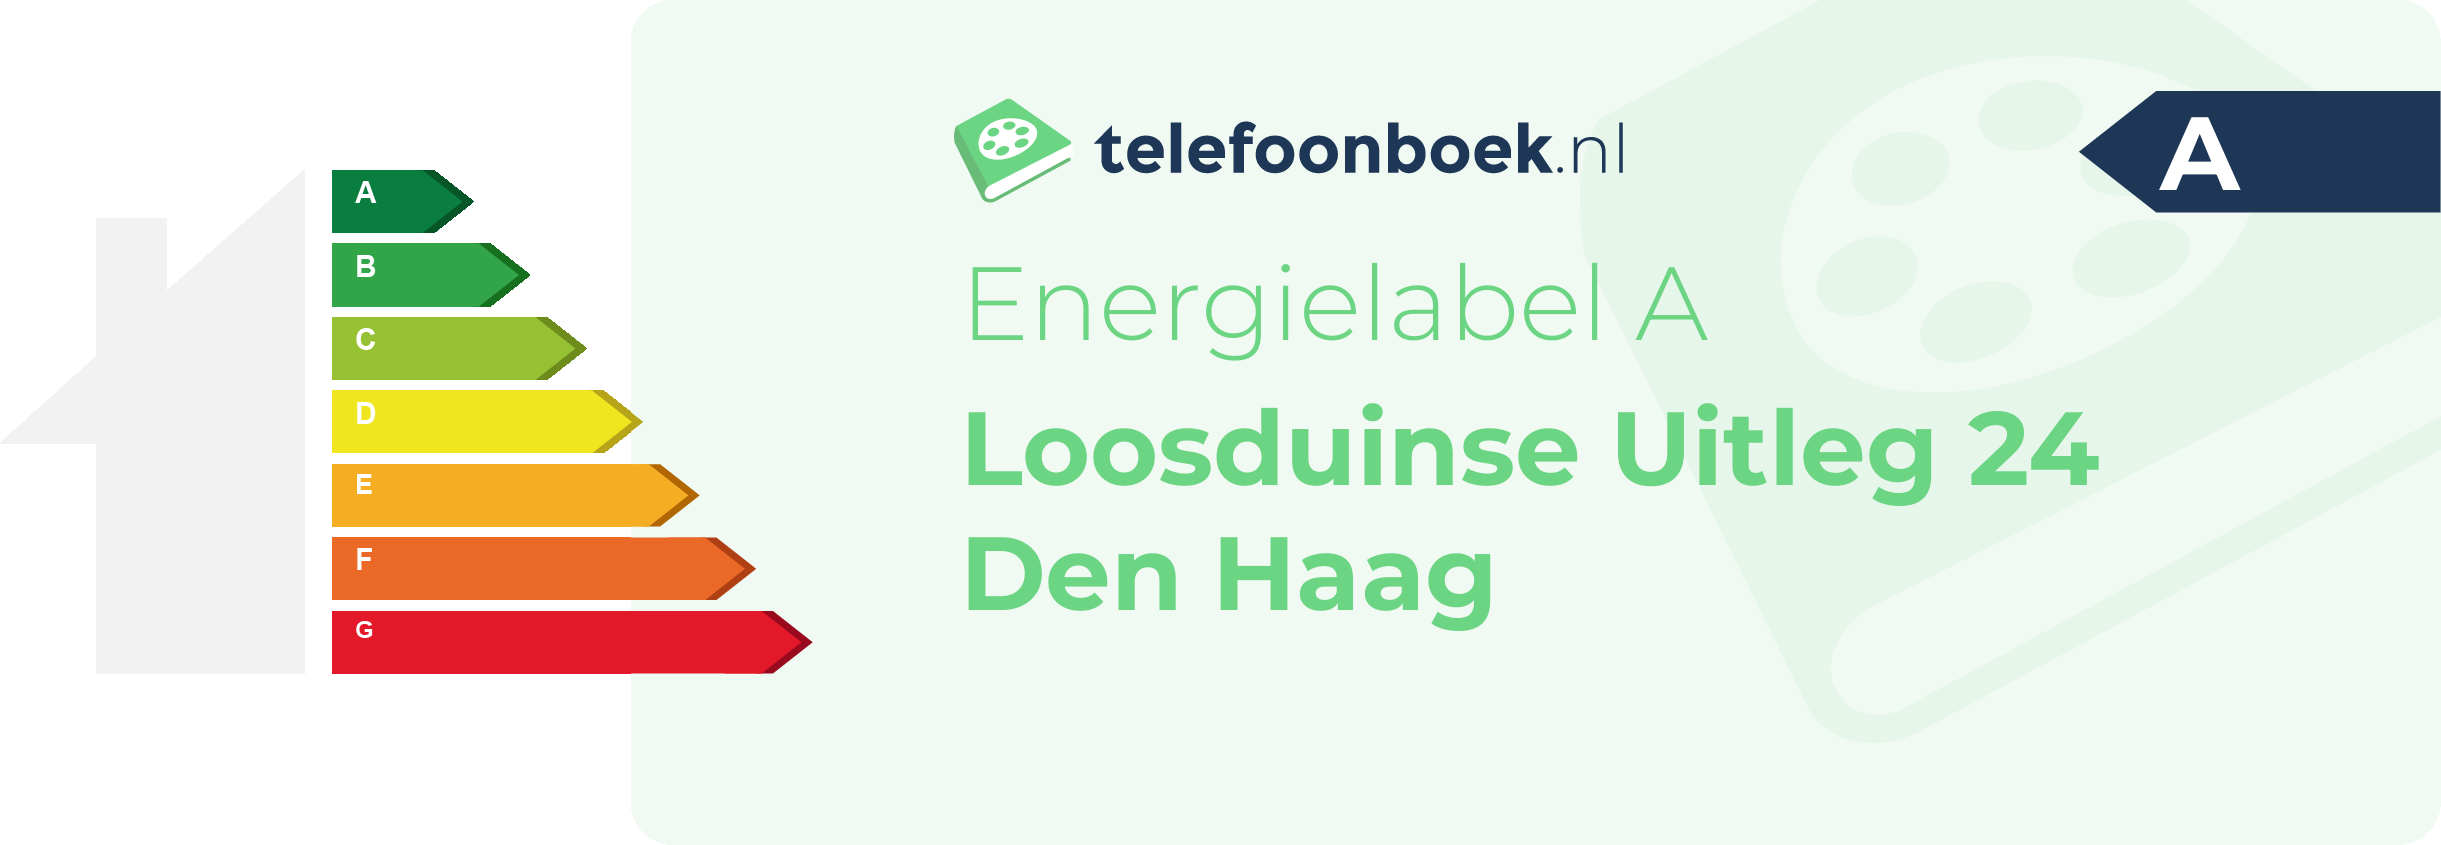 Energielabel Loosduinse Uitleg 24 Den Haag